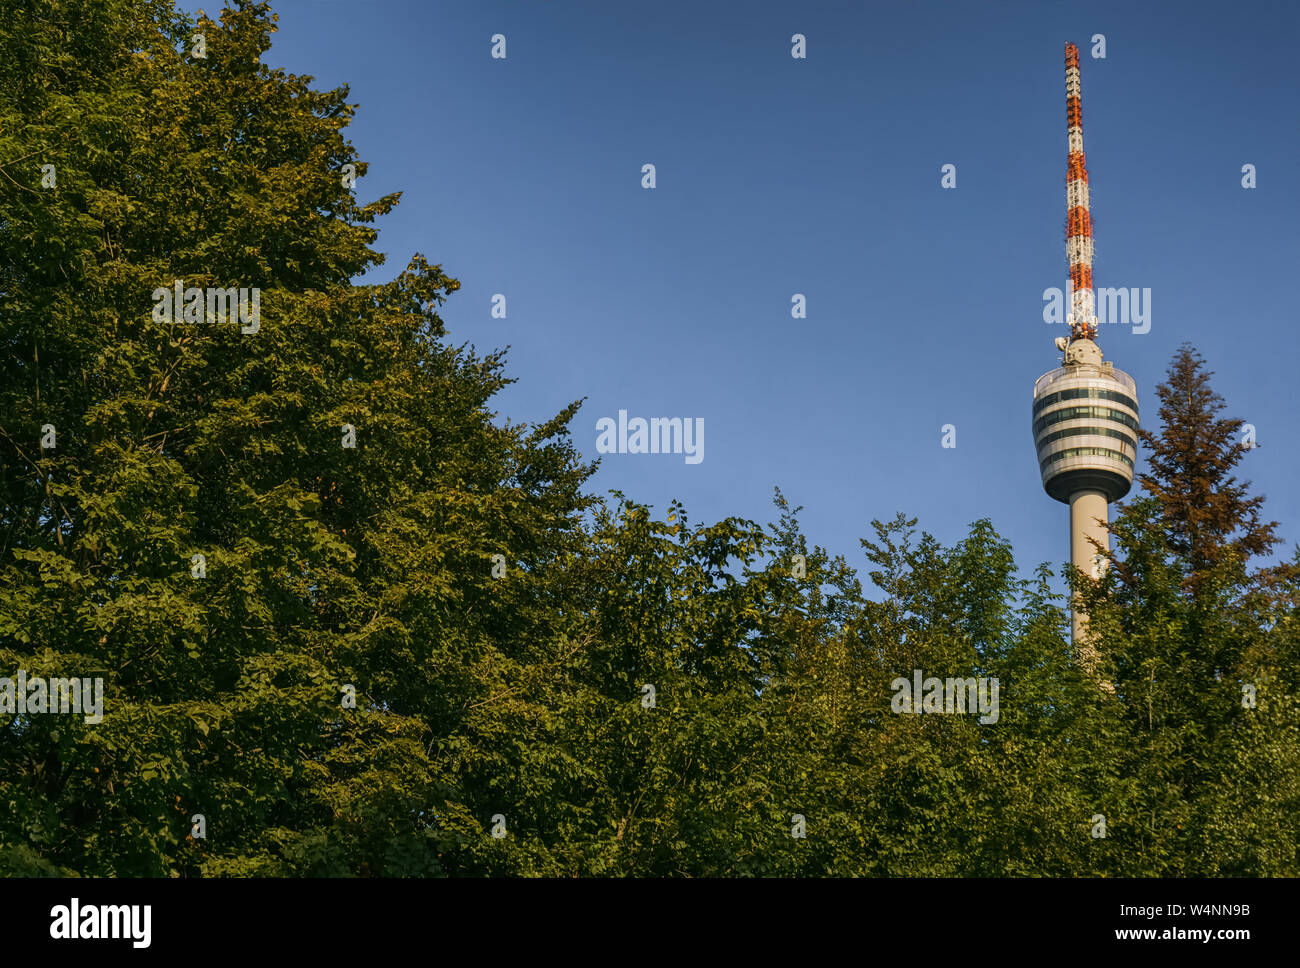 STUTTGART, DEUTSCHLAND - Juli 21,2019: Der Fernsehturm dieses alten Gebäudes ist in die Jahnstrasse, außerhalb der Stadt und in den Wäldern rund um es. Es ist eine berühmte Touris Stockfoto